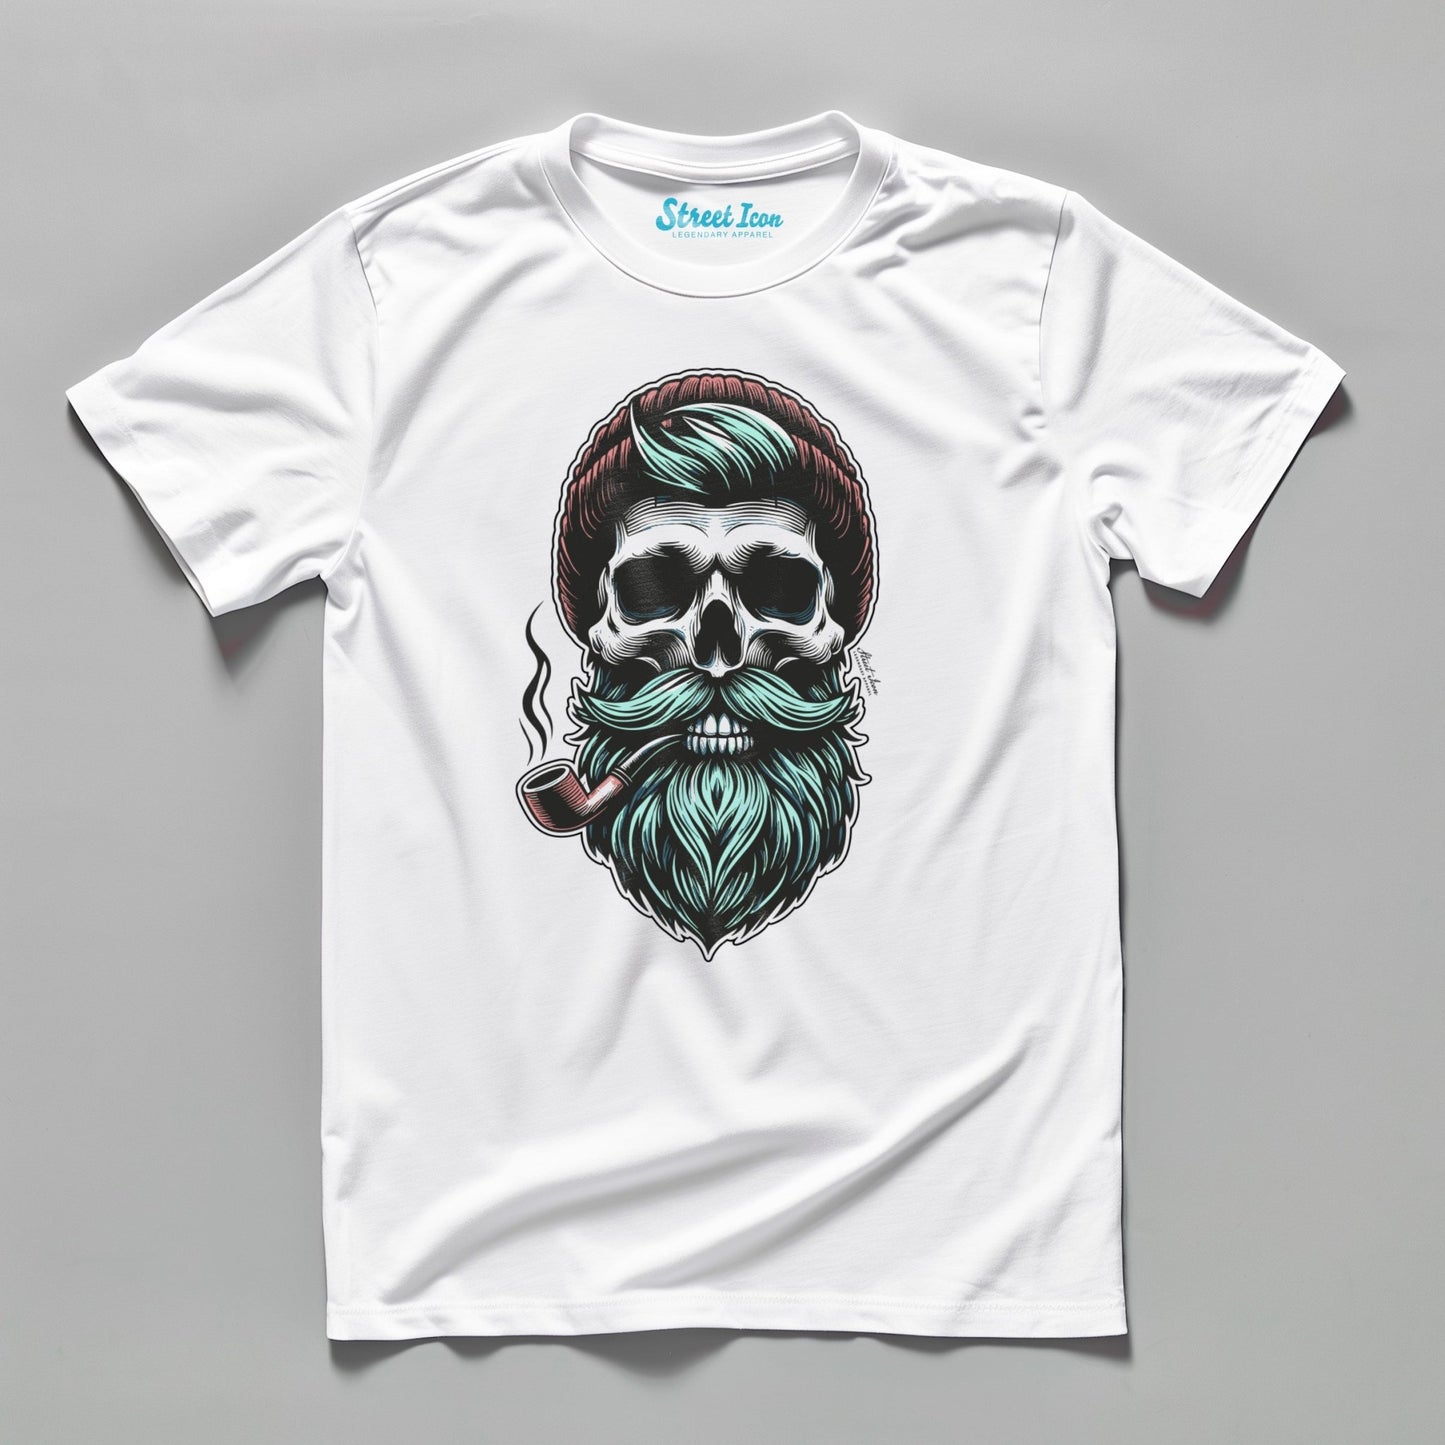 Captain Color - Premium T-Shirt - Street Icon